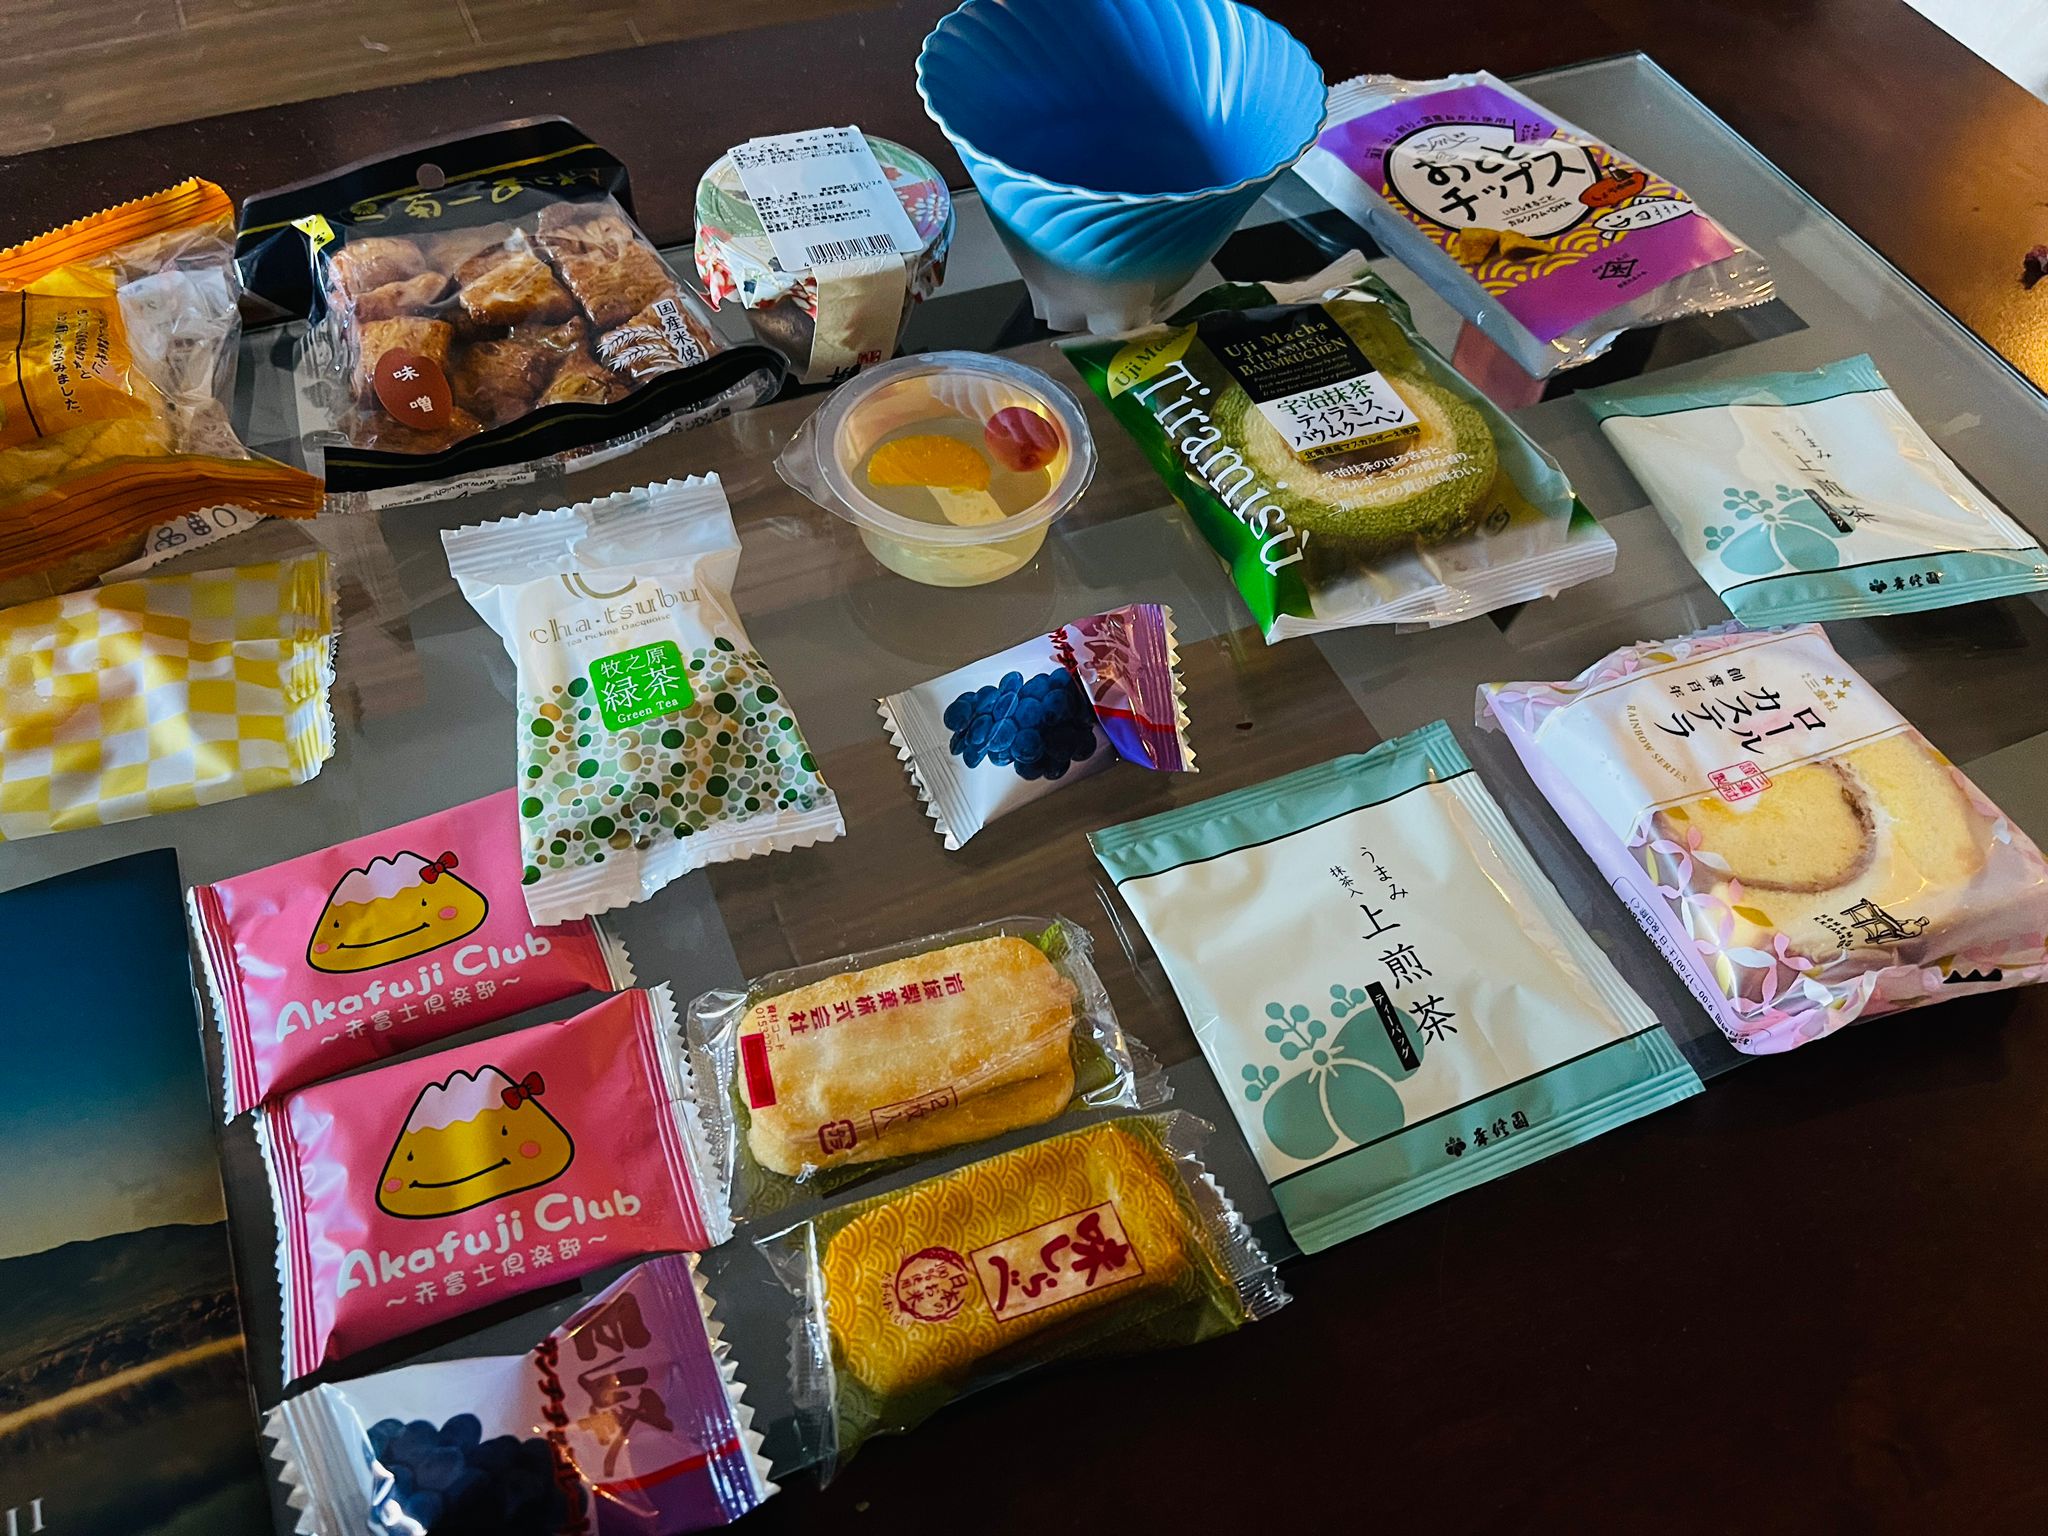 Sakuraco autentiska japanska snacks gjorda av lokala producenter i Japan